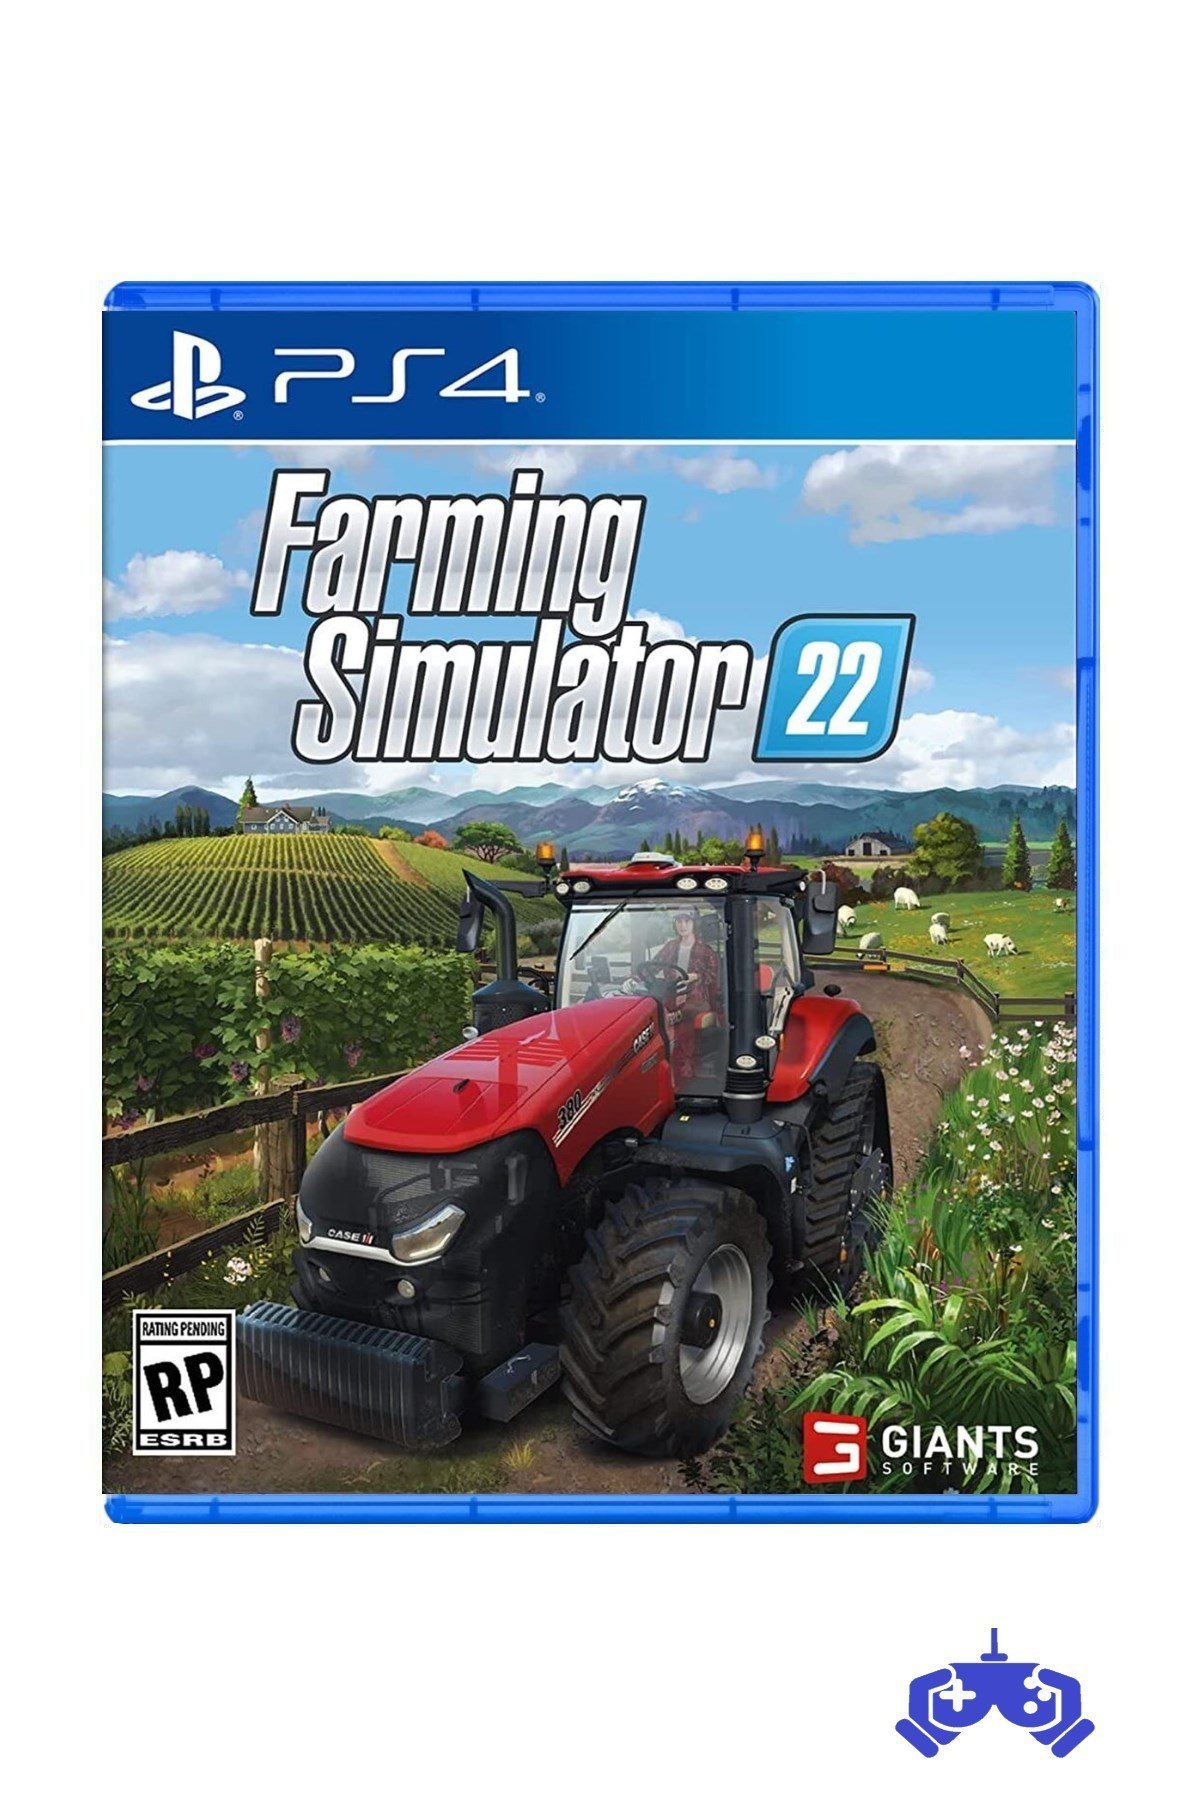 Ps4 Farming Simulator 22 Fiyatı | Farming Simulator 22 Nereden Alınır |  Farming Simulator 22 en ucuz fiyat